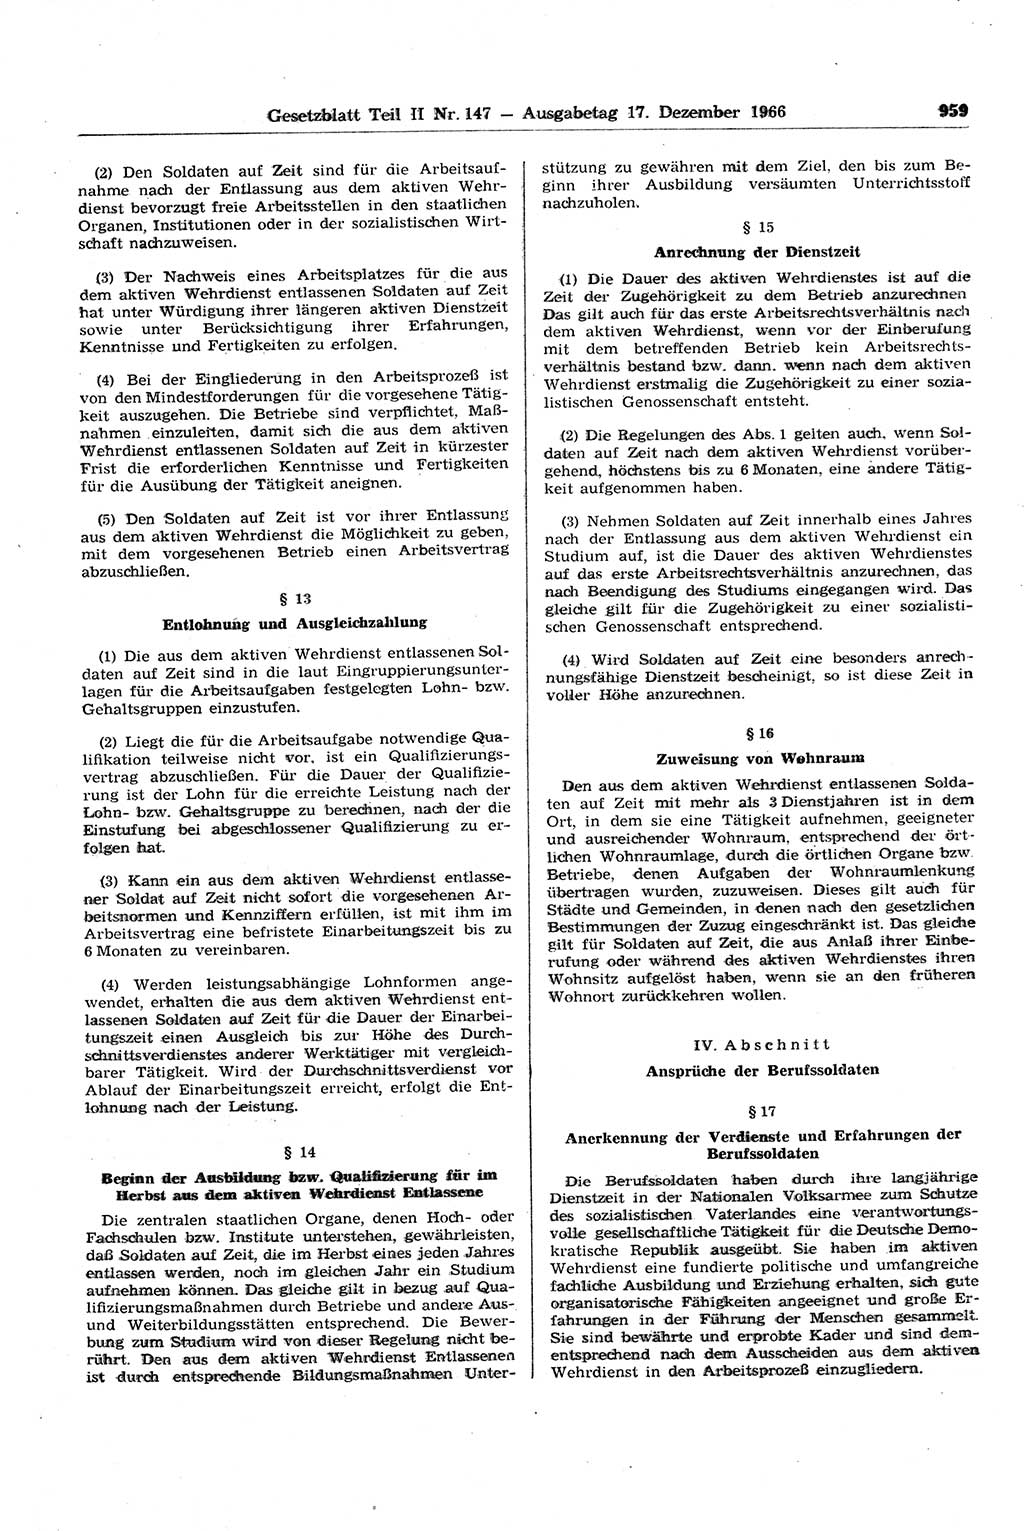 Gesetzblatt (GBl.) der Deutschen Demokratischen Republik (DDR) Teil ⅠⅠ 1966, Seite 959 (GBl. DDR ⅠⅠ 1966, S. 959)